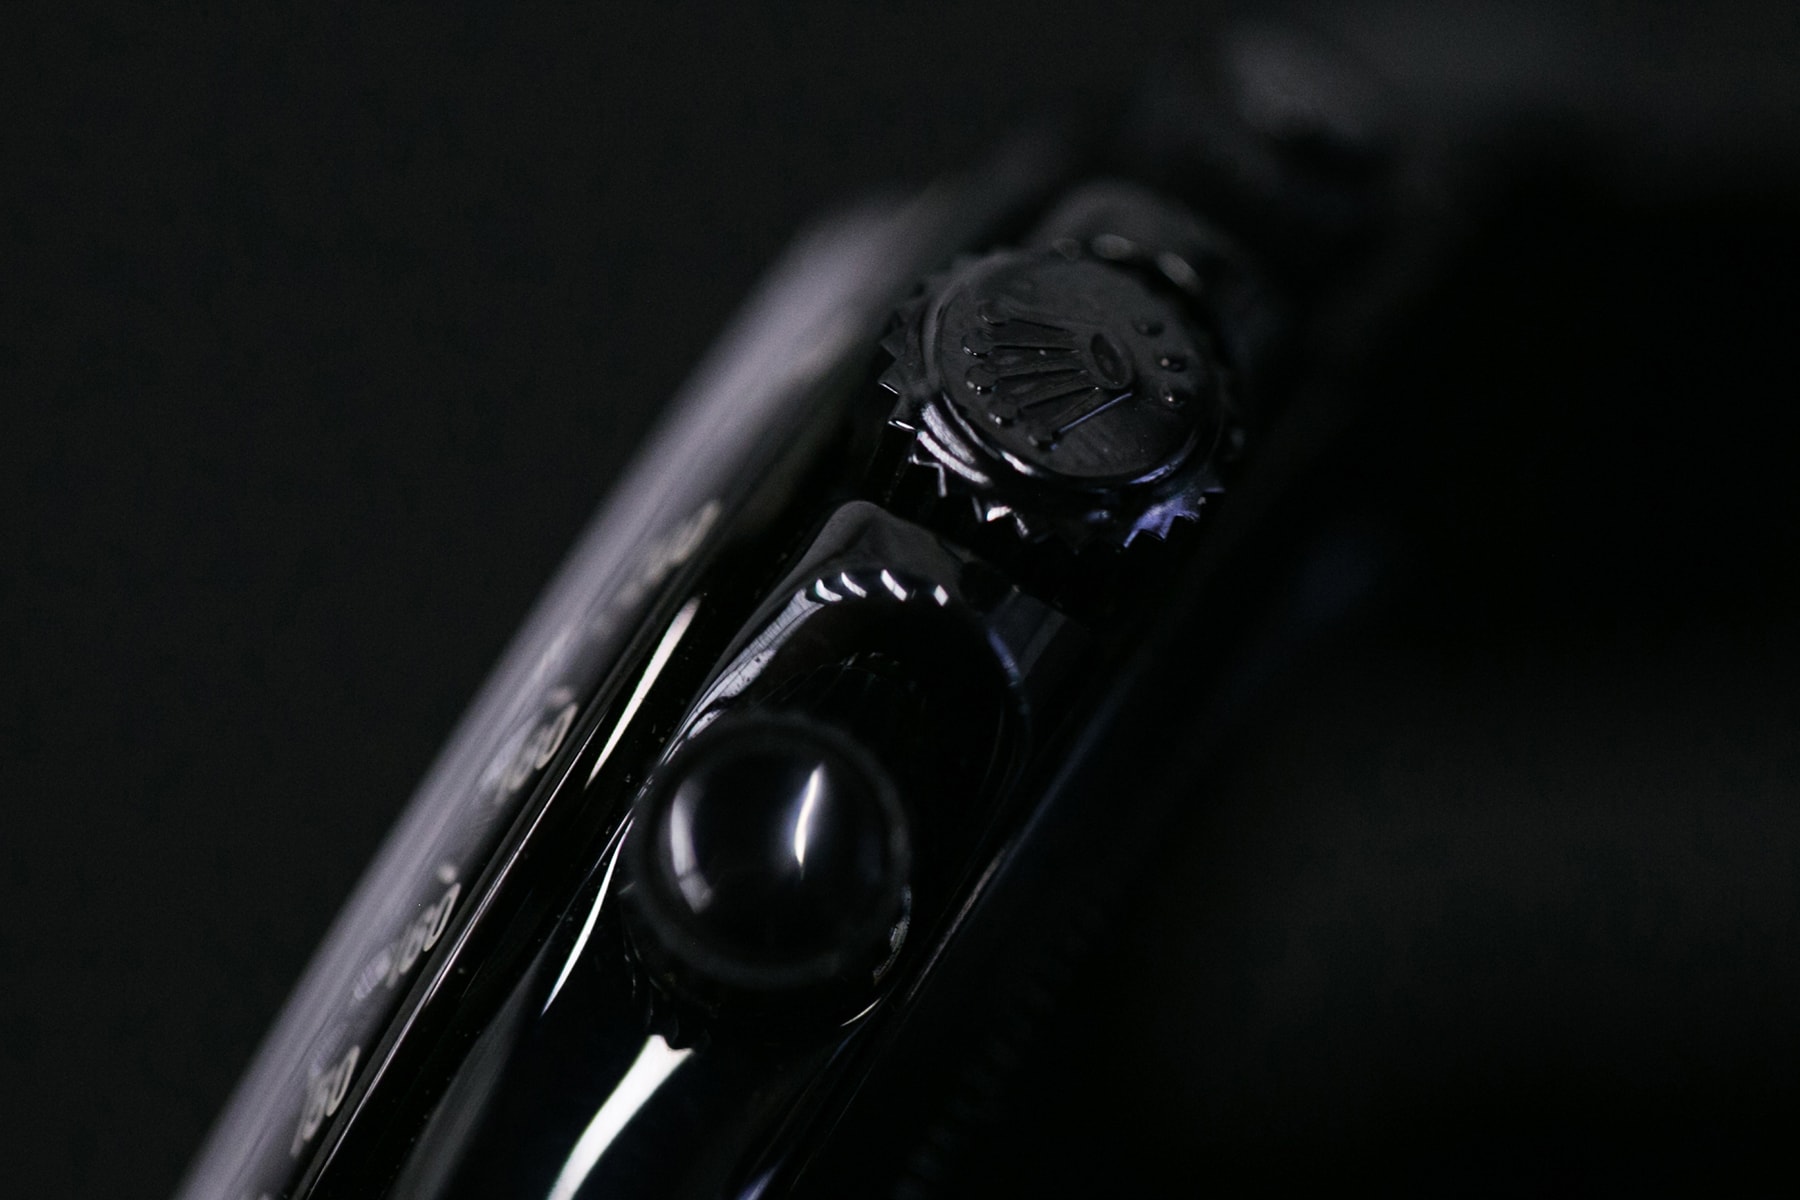 BAPE x Rolex by Bamford Watch Department